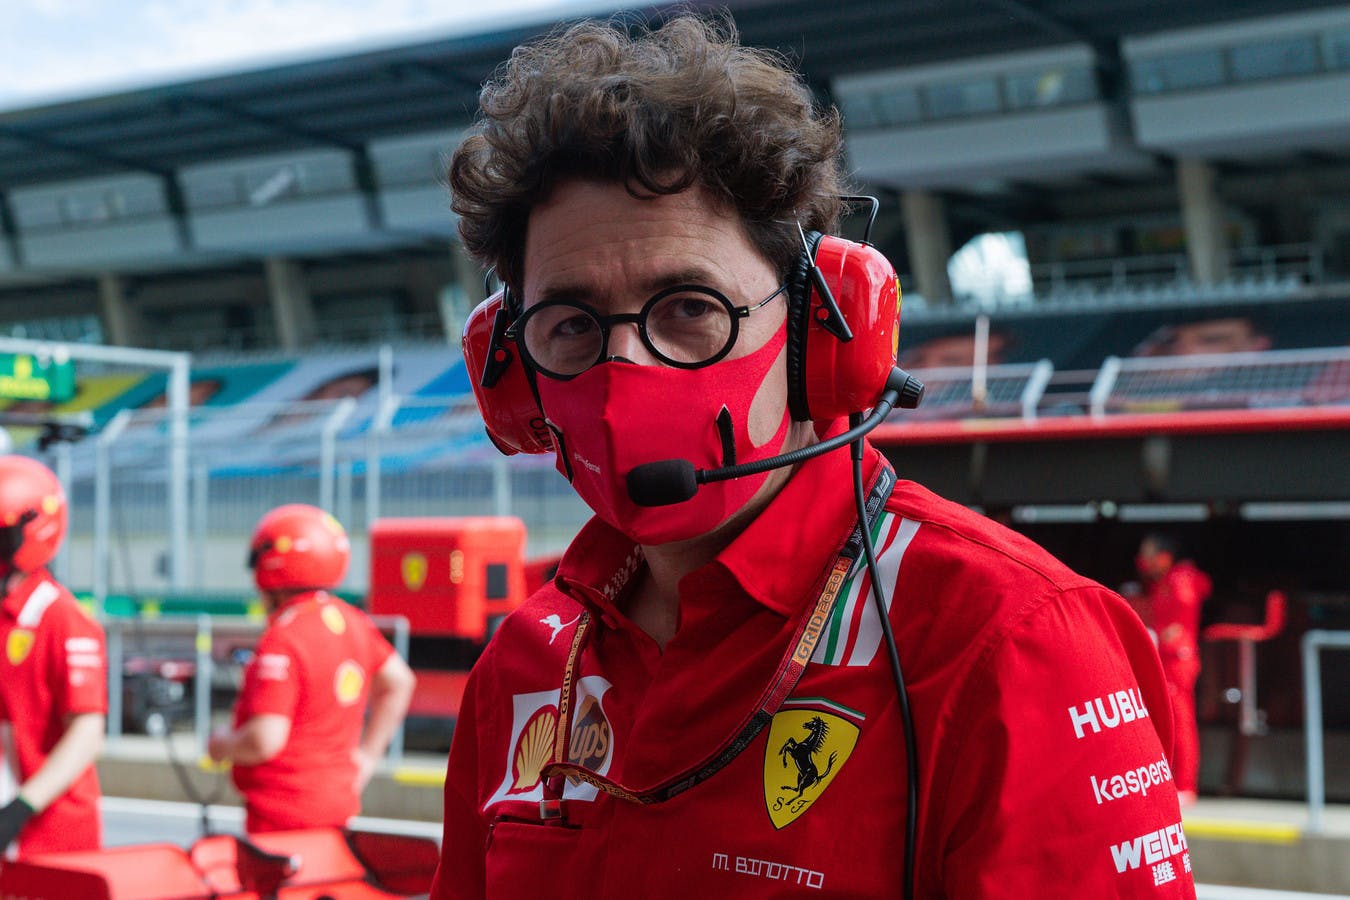 Ferrari reaguje i wprowadza zmiany w dziale technicznym